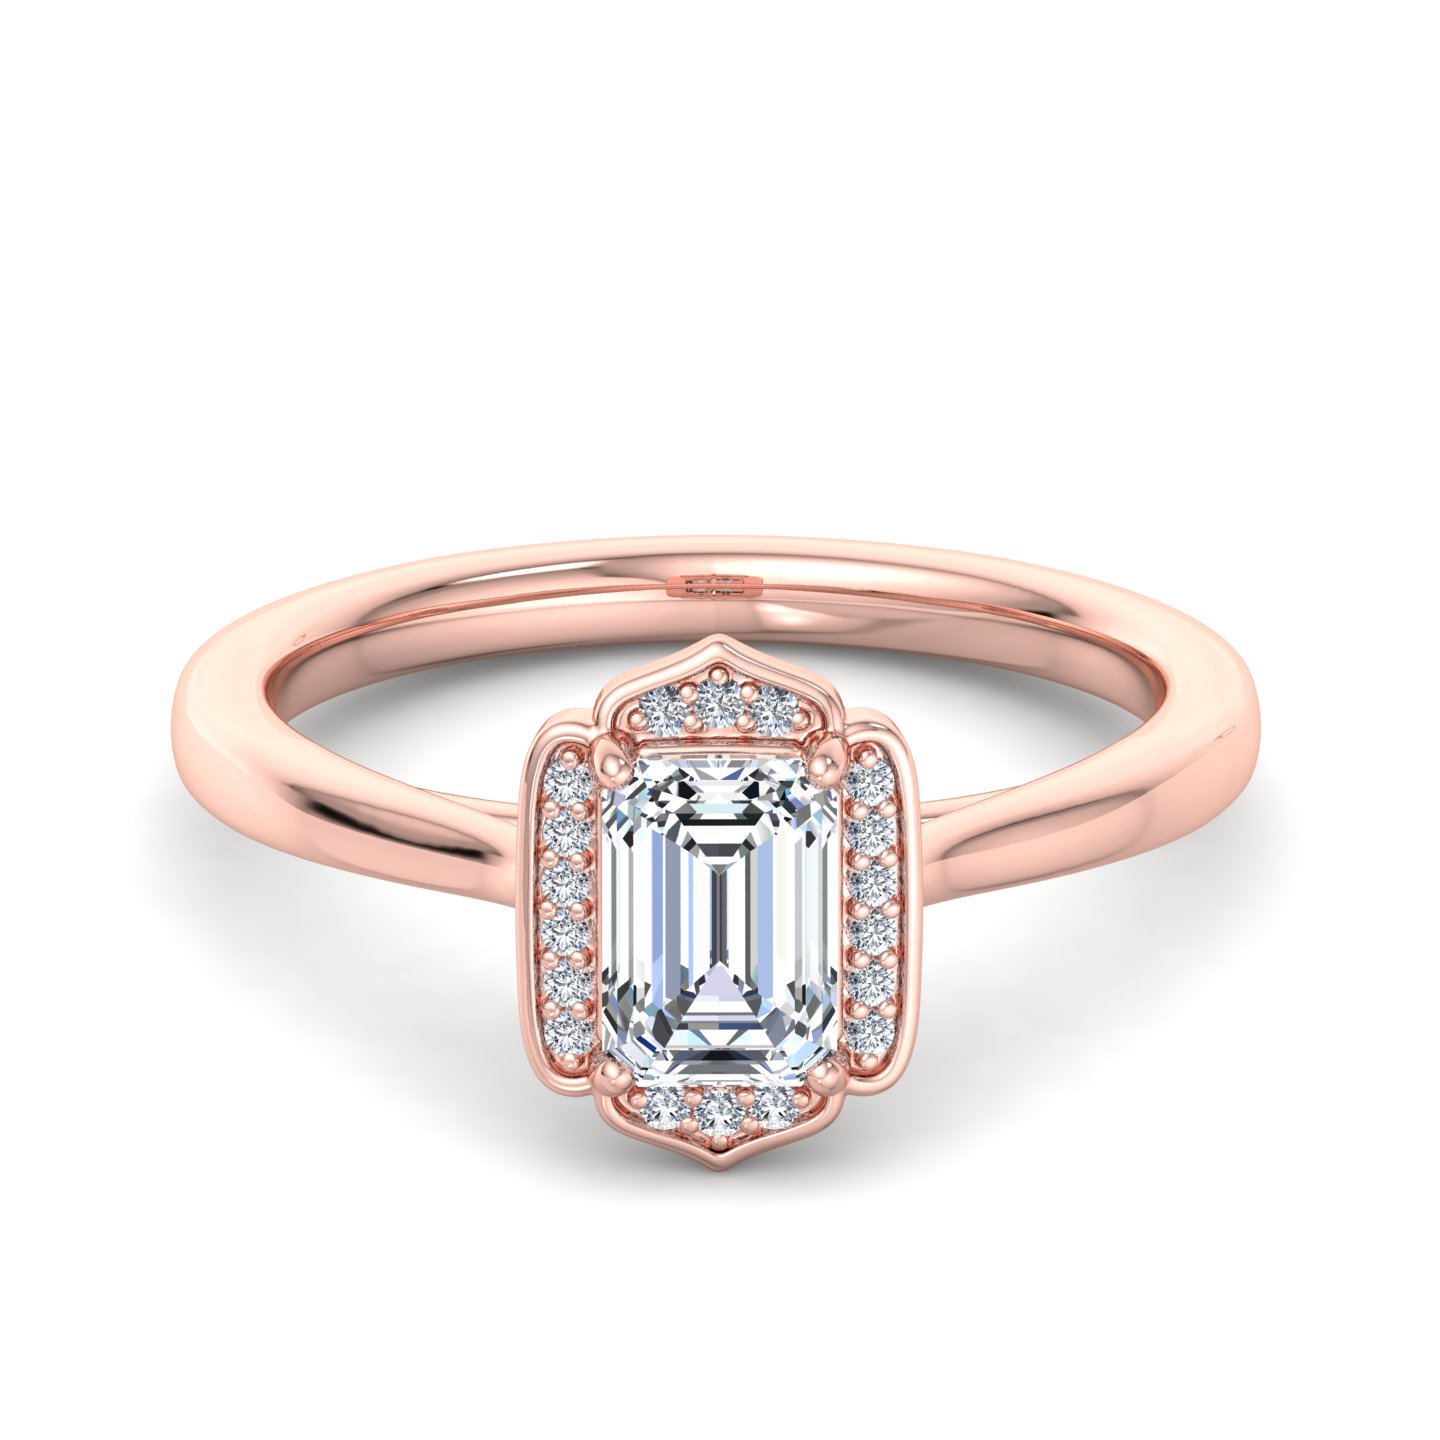 Lennon Halo Engagement Ring